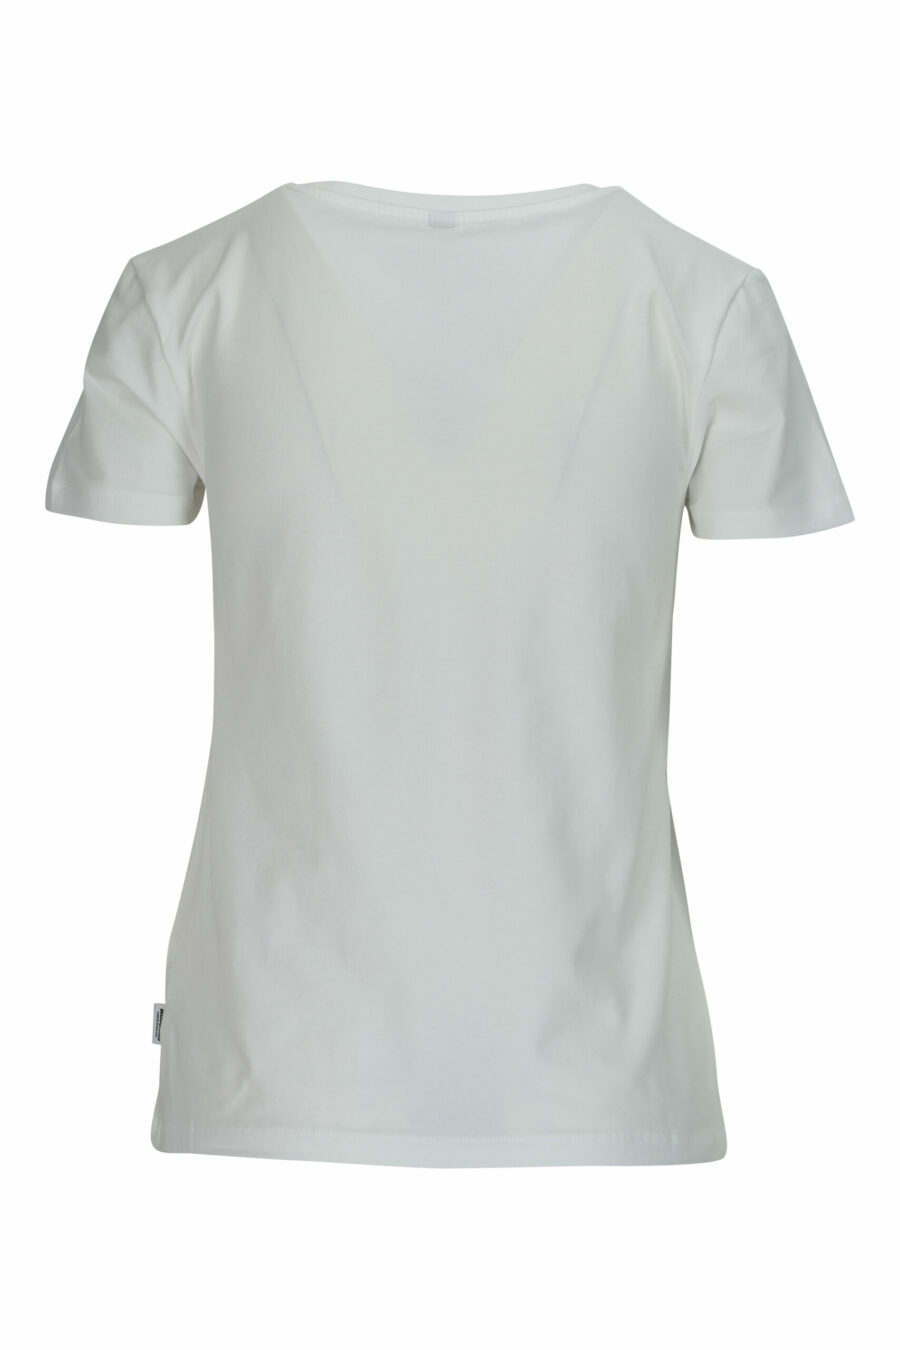 Camiseta blanca con logo oso "underbear" parche - 667113697321 1 scaled